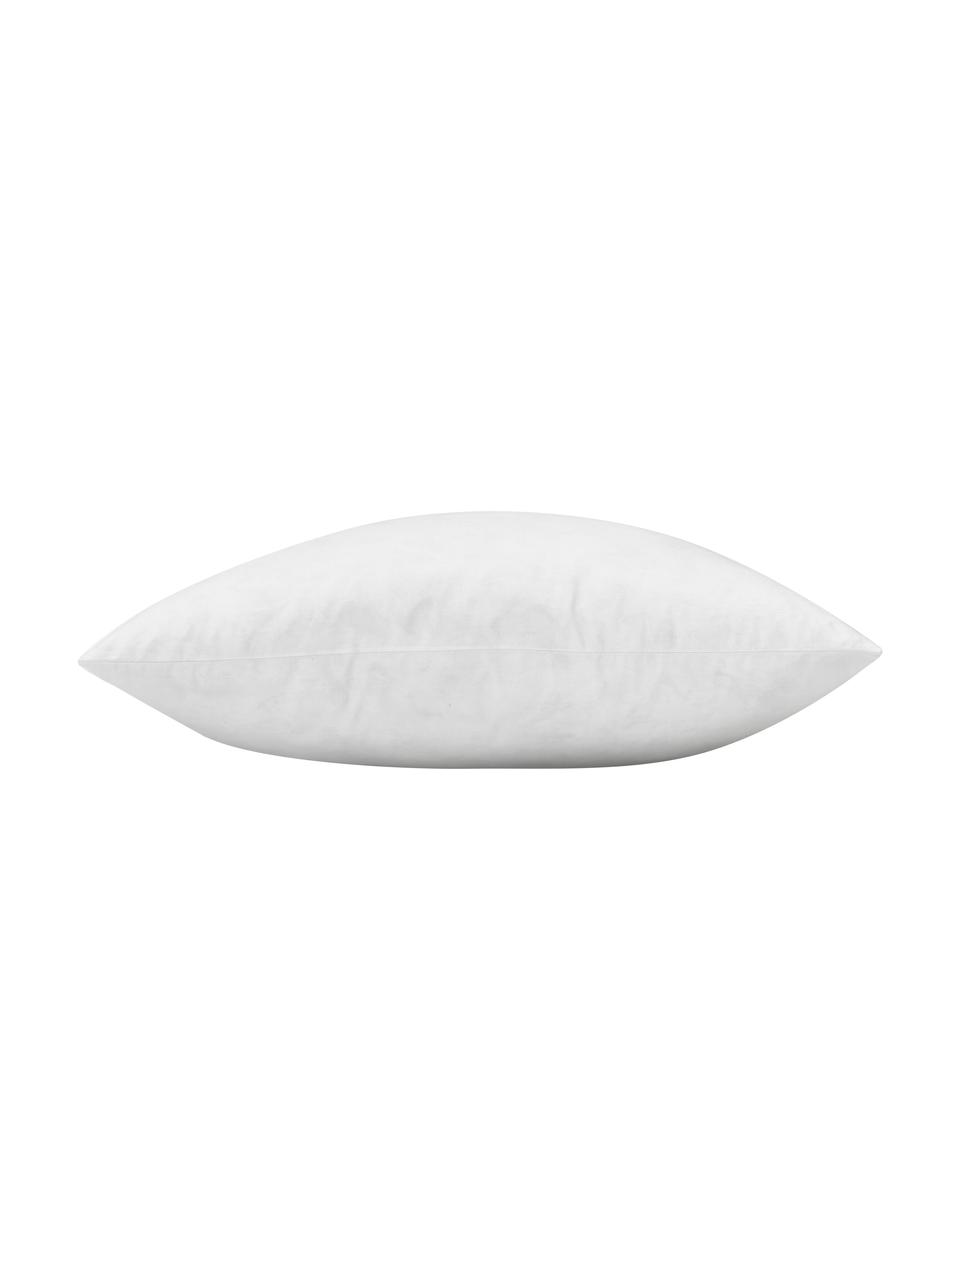 Wkład do poduszki dekoracyjnej Comfort, Biały, S 40 x D 40 cm